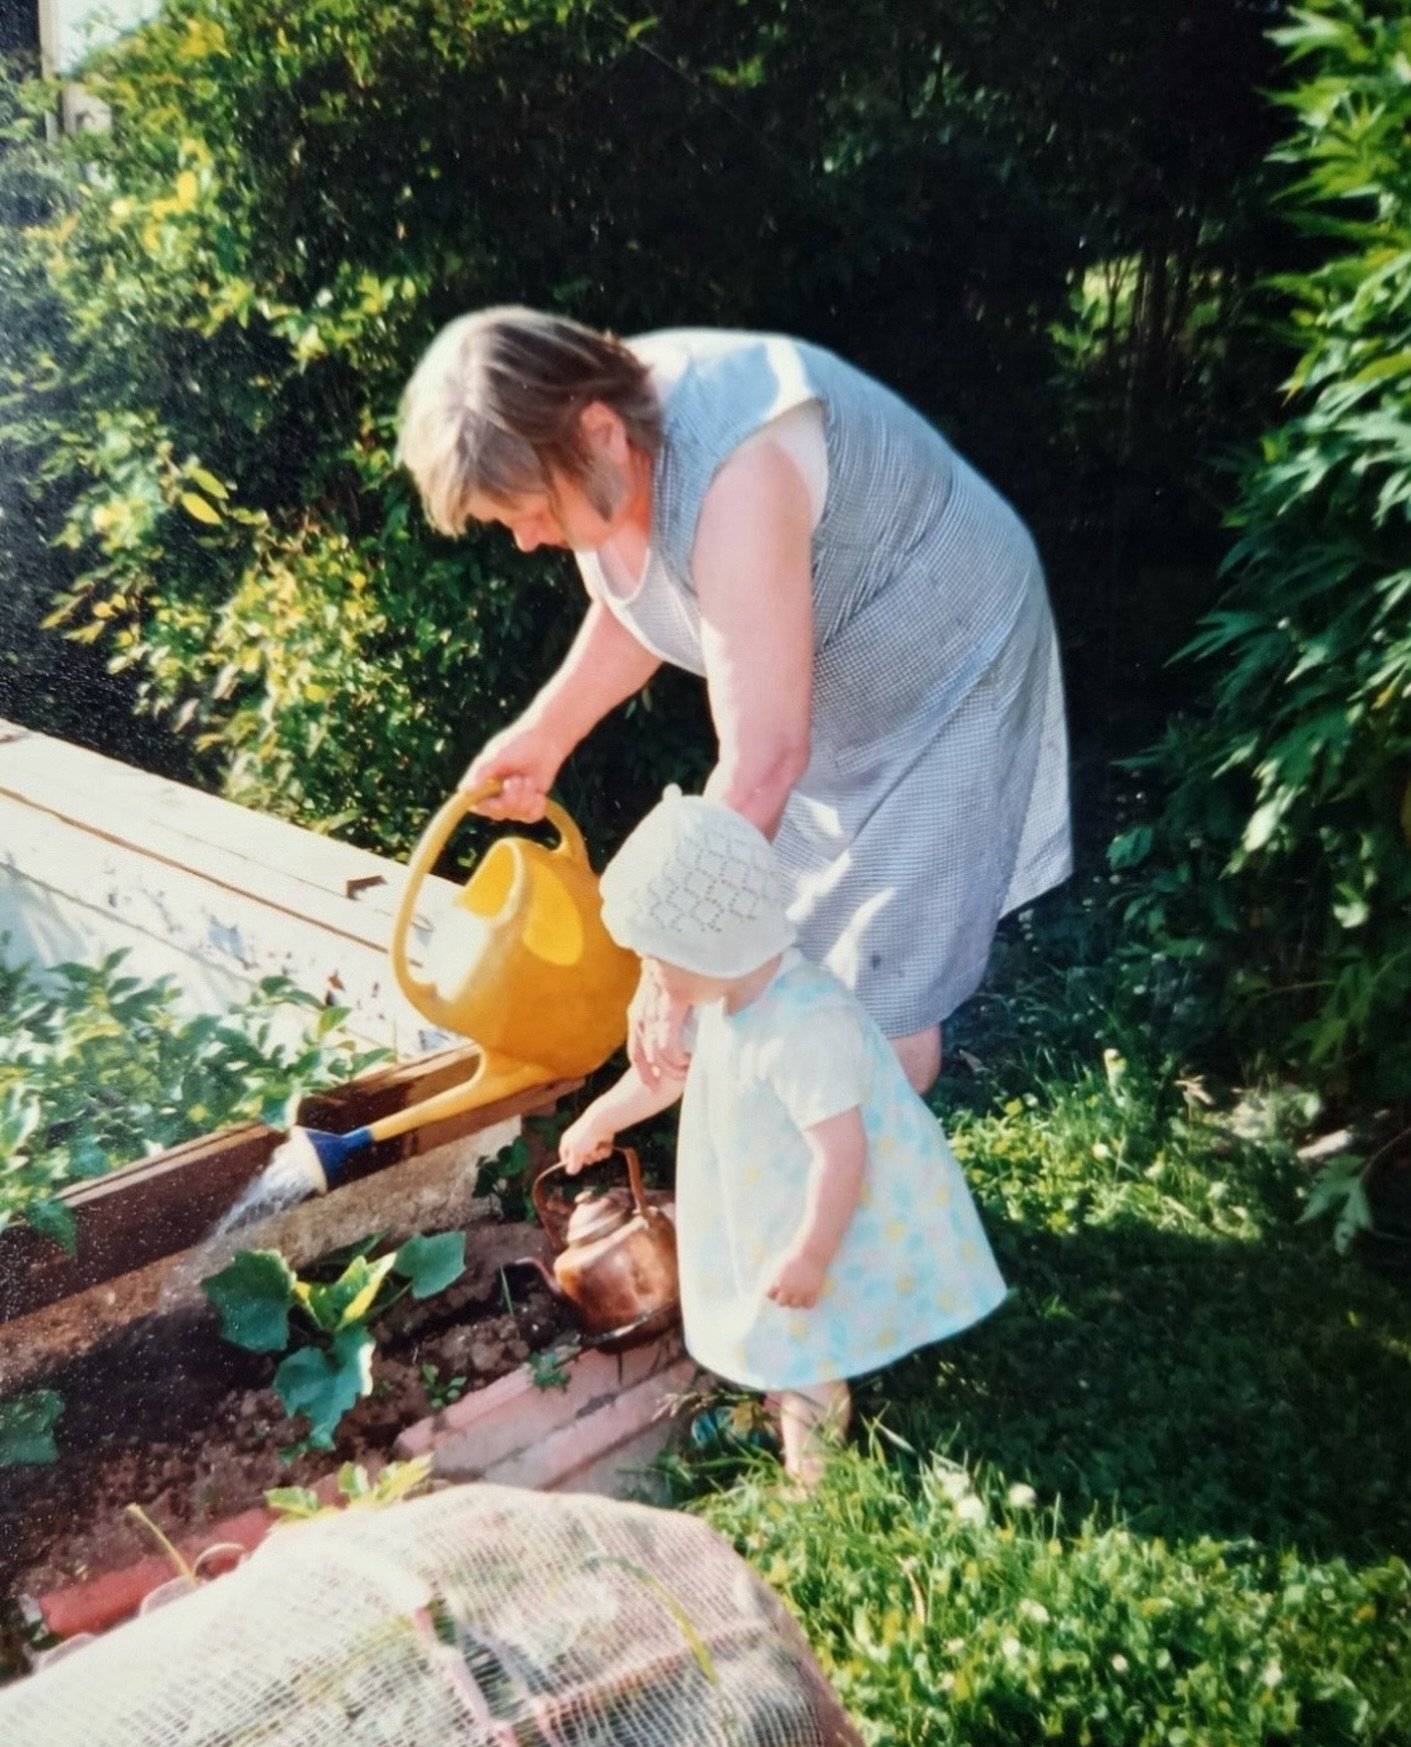 Min&auml; ja mummu kasvimaalla, 1990.

Kuvassa olen jo edesmenneen mummuni, &auml;itini &auml;idin kanssa. Kiinnostus puutarhanhoitoon ja erityisesti n&auml;ytt&auml;viin kukkiin juontaa siis jo pitk&auml;lt&auml; 🌸

T&auml;ss&auml; kuparipannun kan